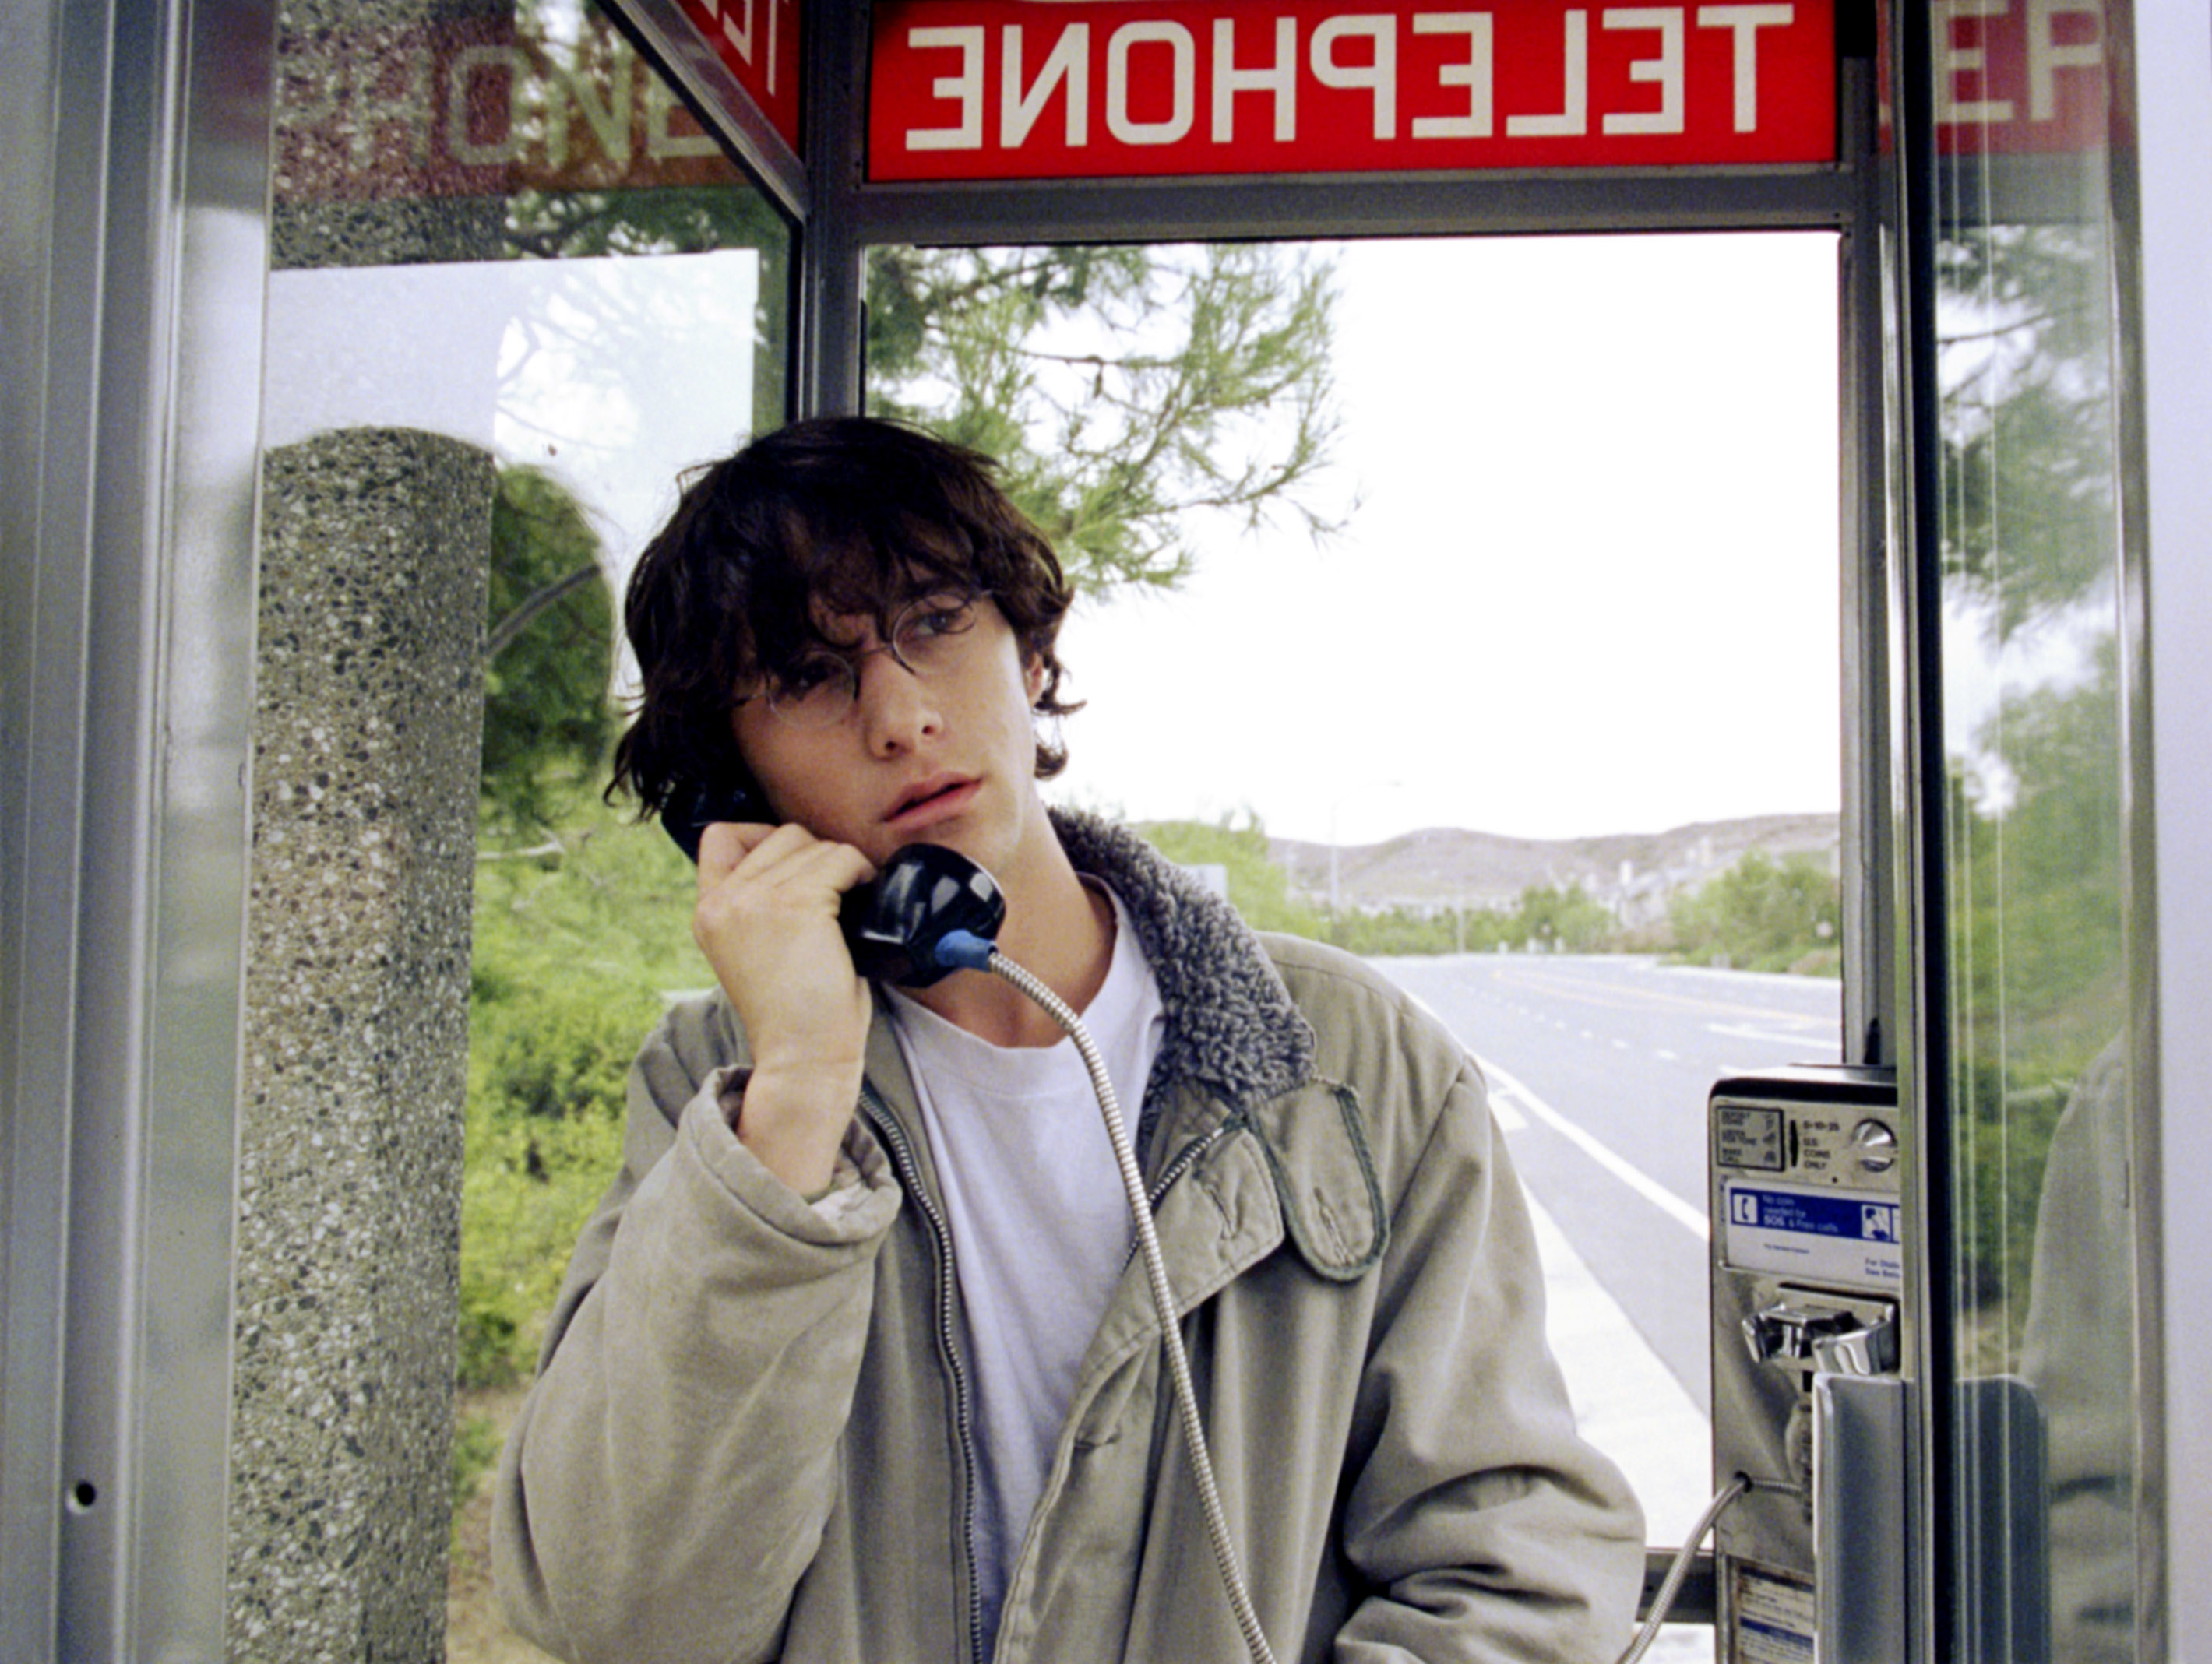 Joseph Gordon-Levitt on a pay phone